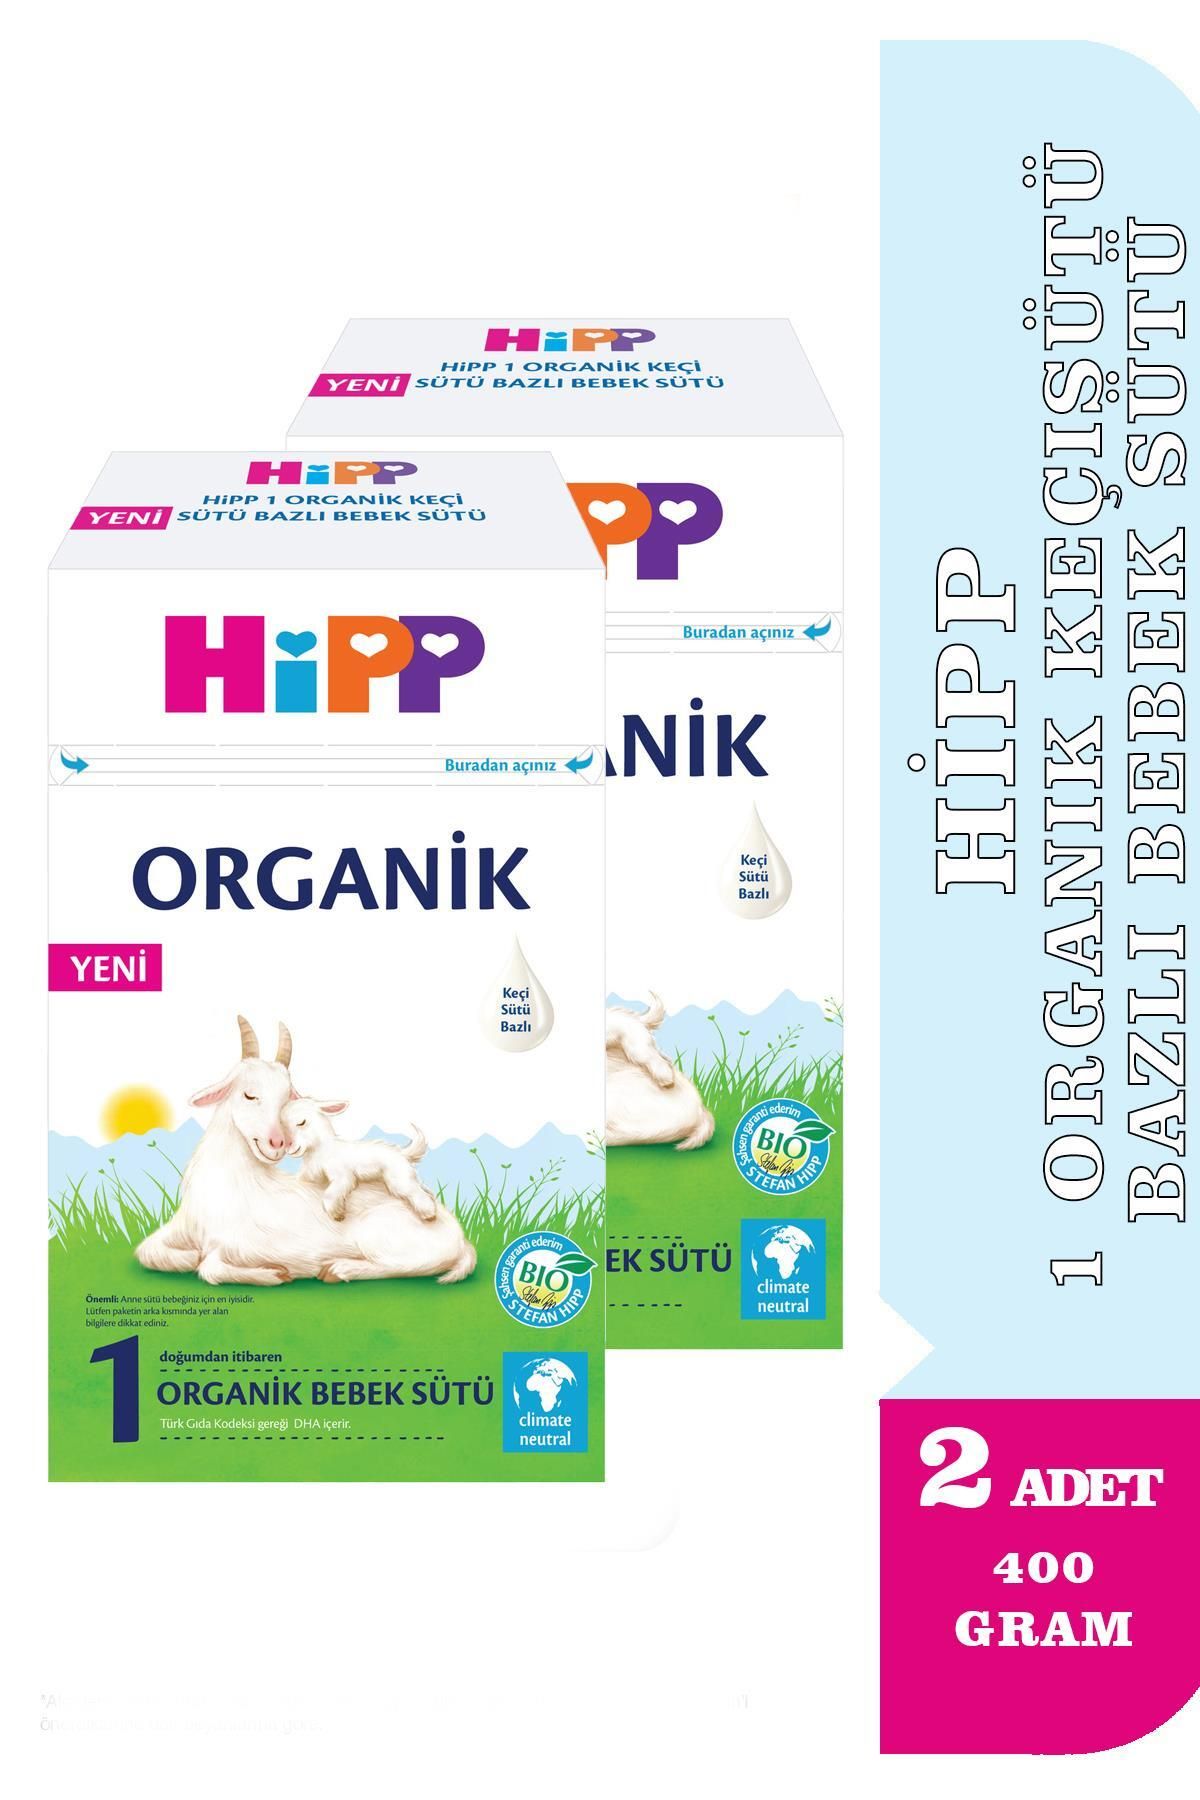 Hipp 1 Organik Keçisütü Bazlı Bebek Sütü 400gr 2 Adet